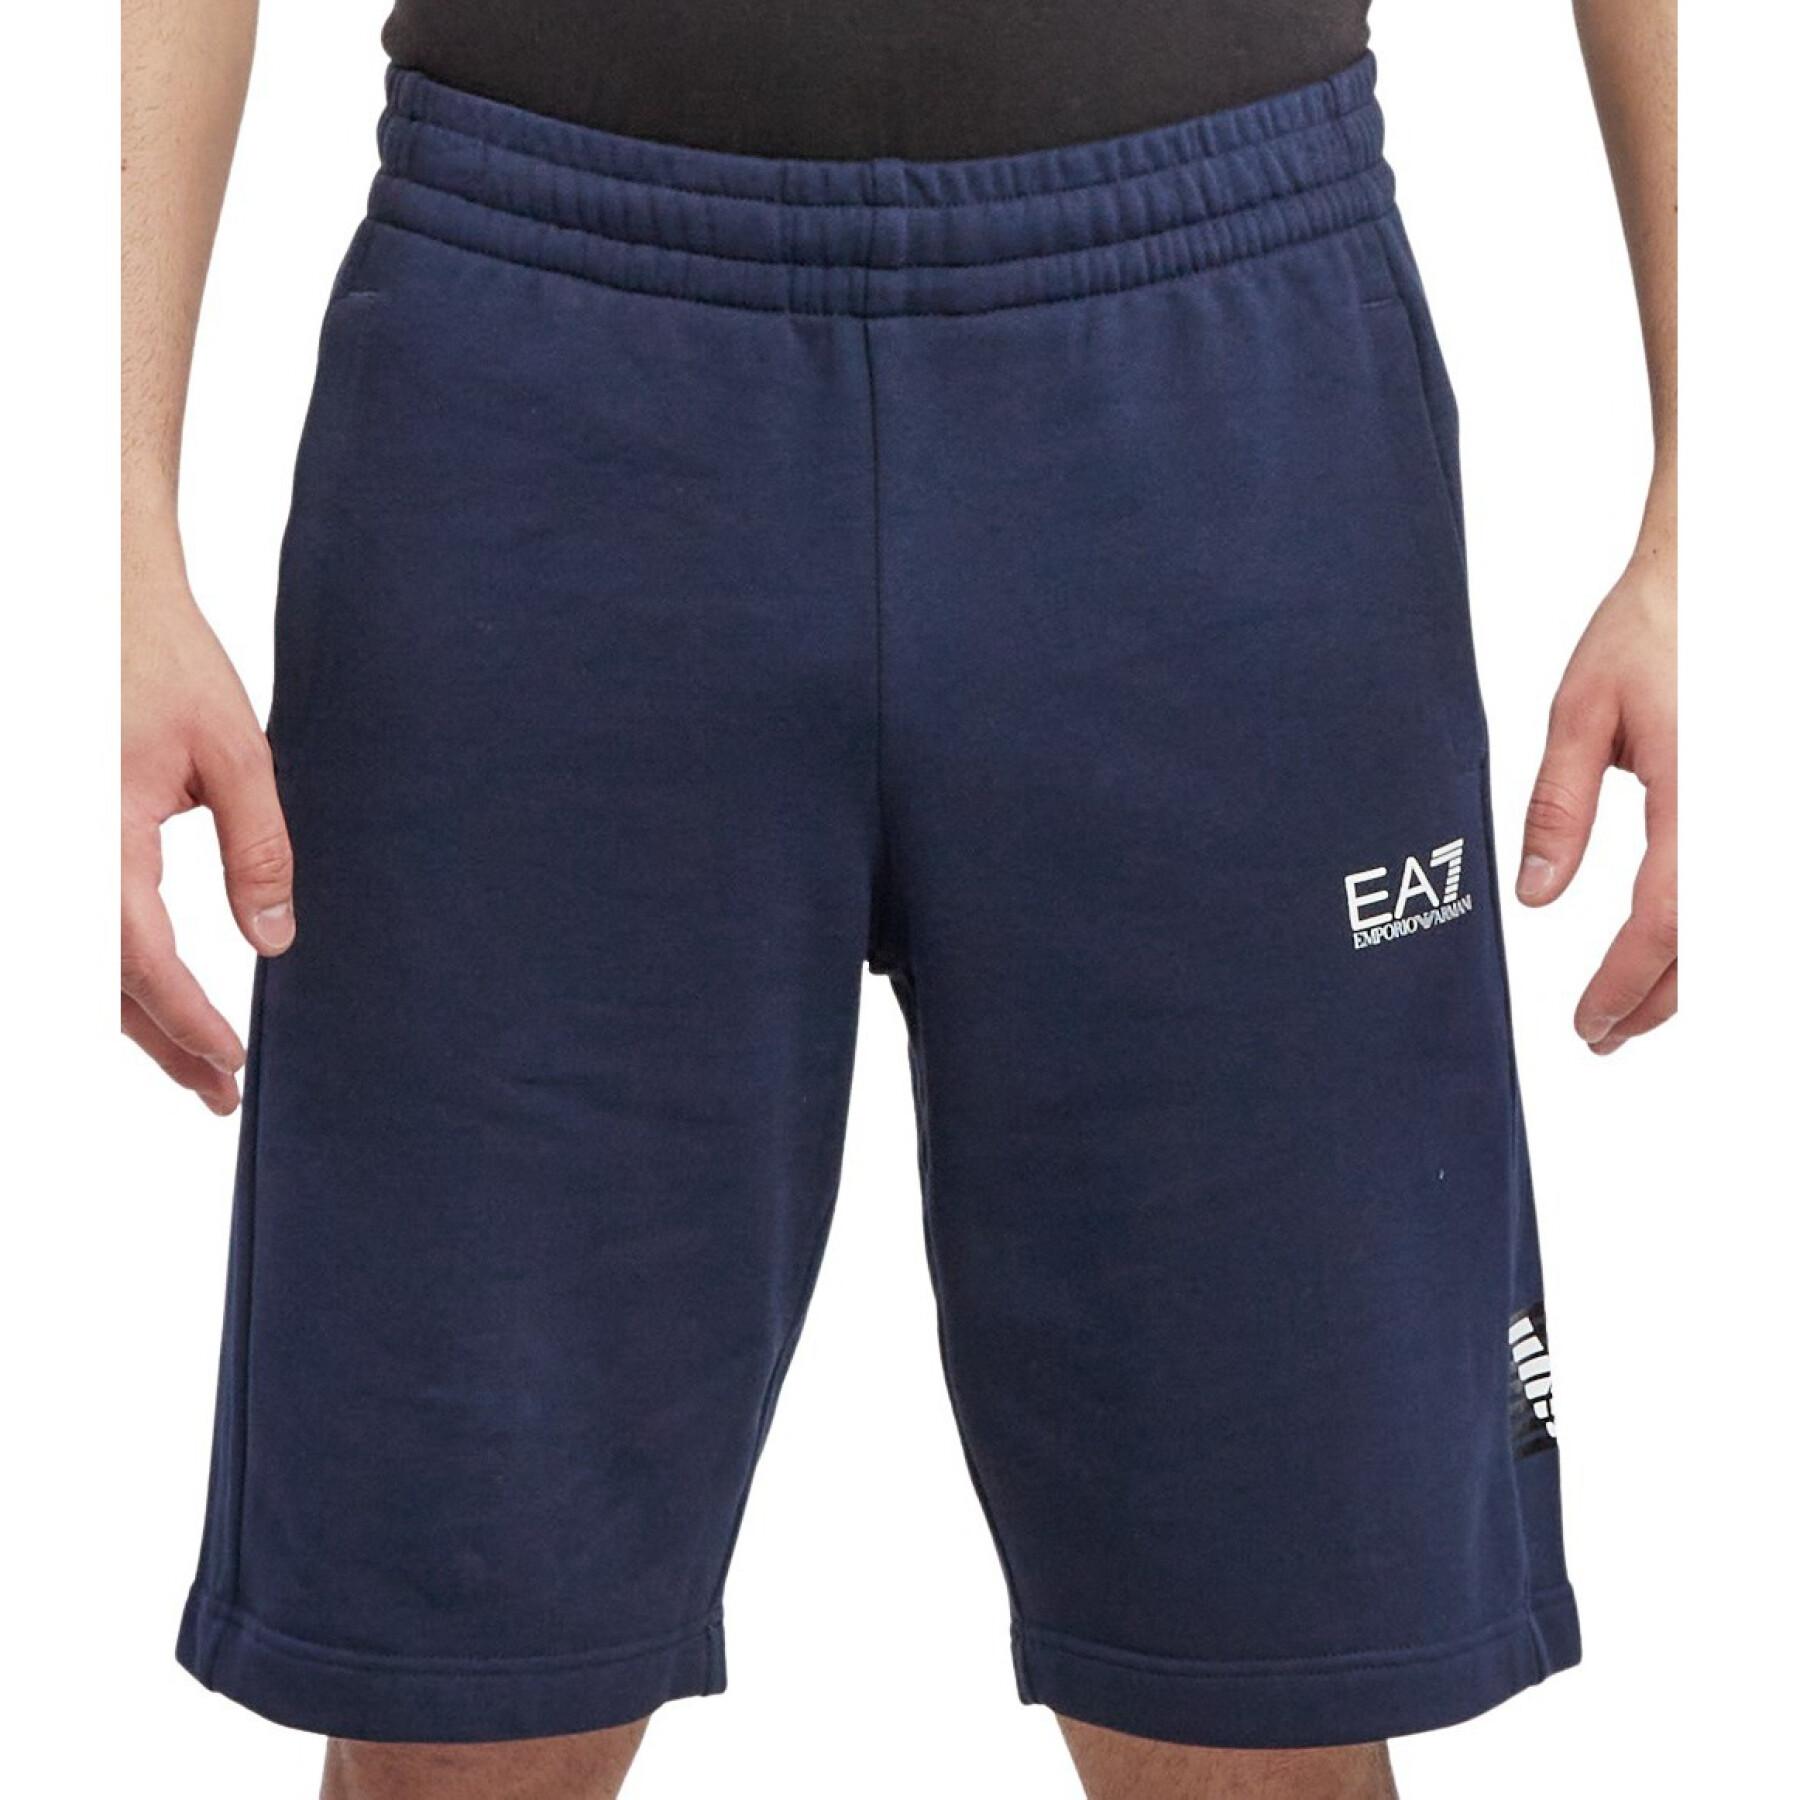 Bermuda shorts EA7 Emporio Armani